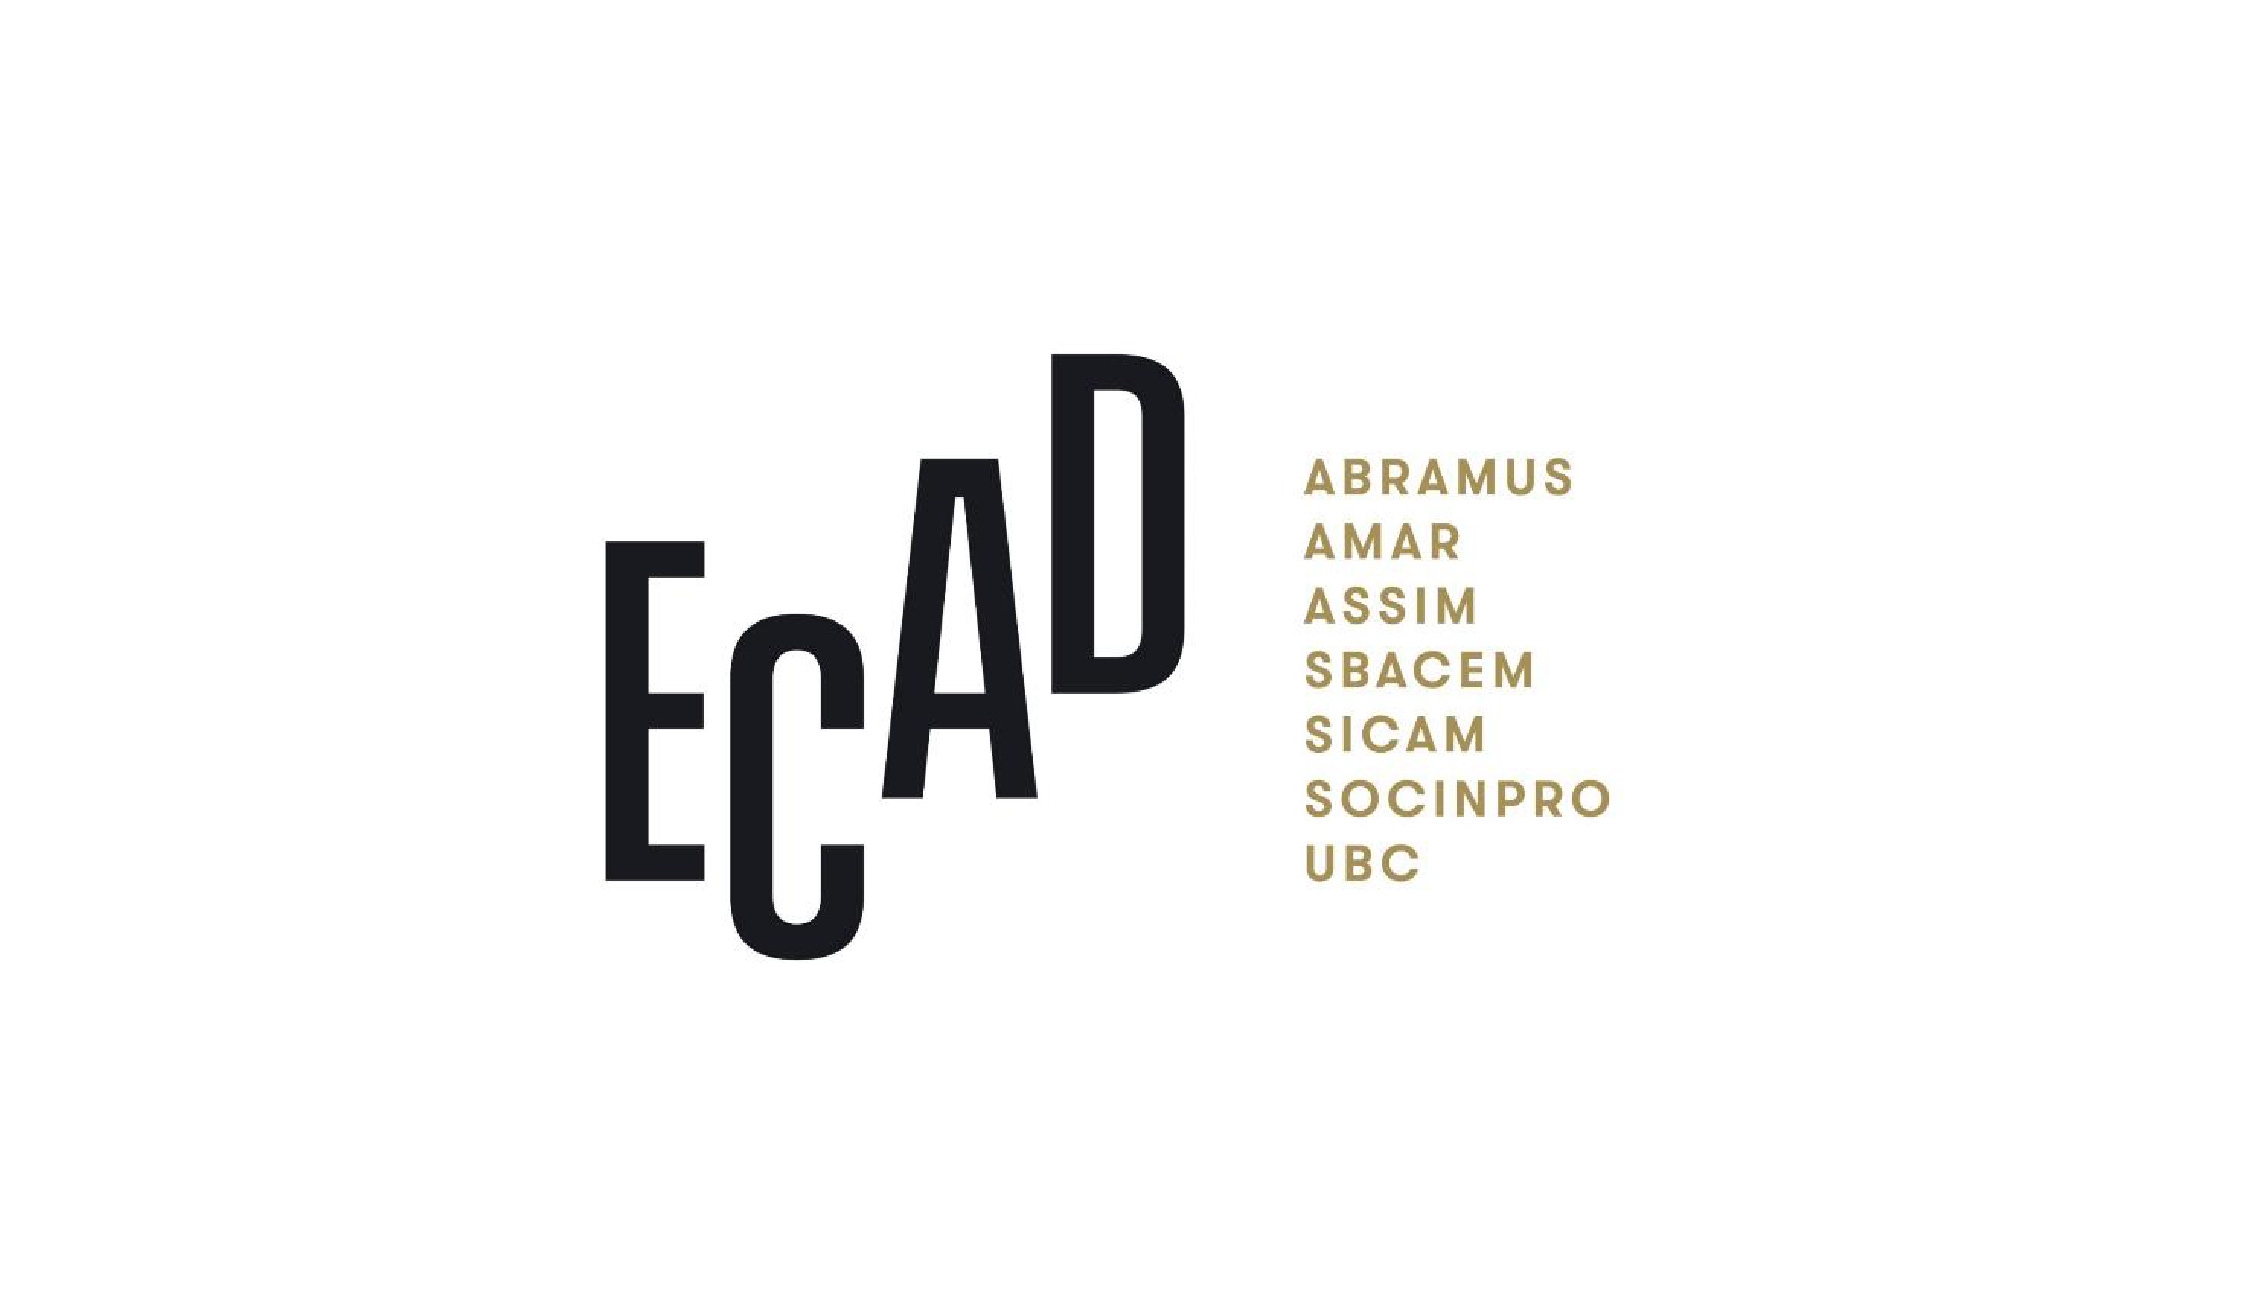 Divulgação/Logo Ecad